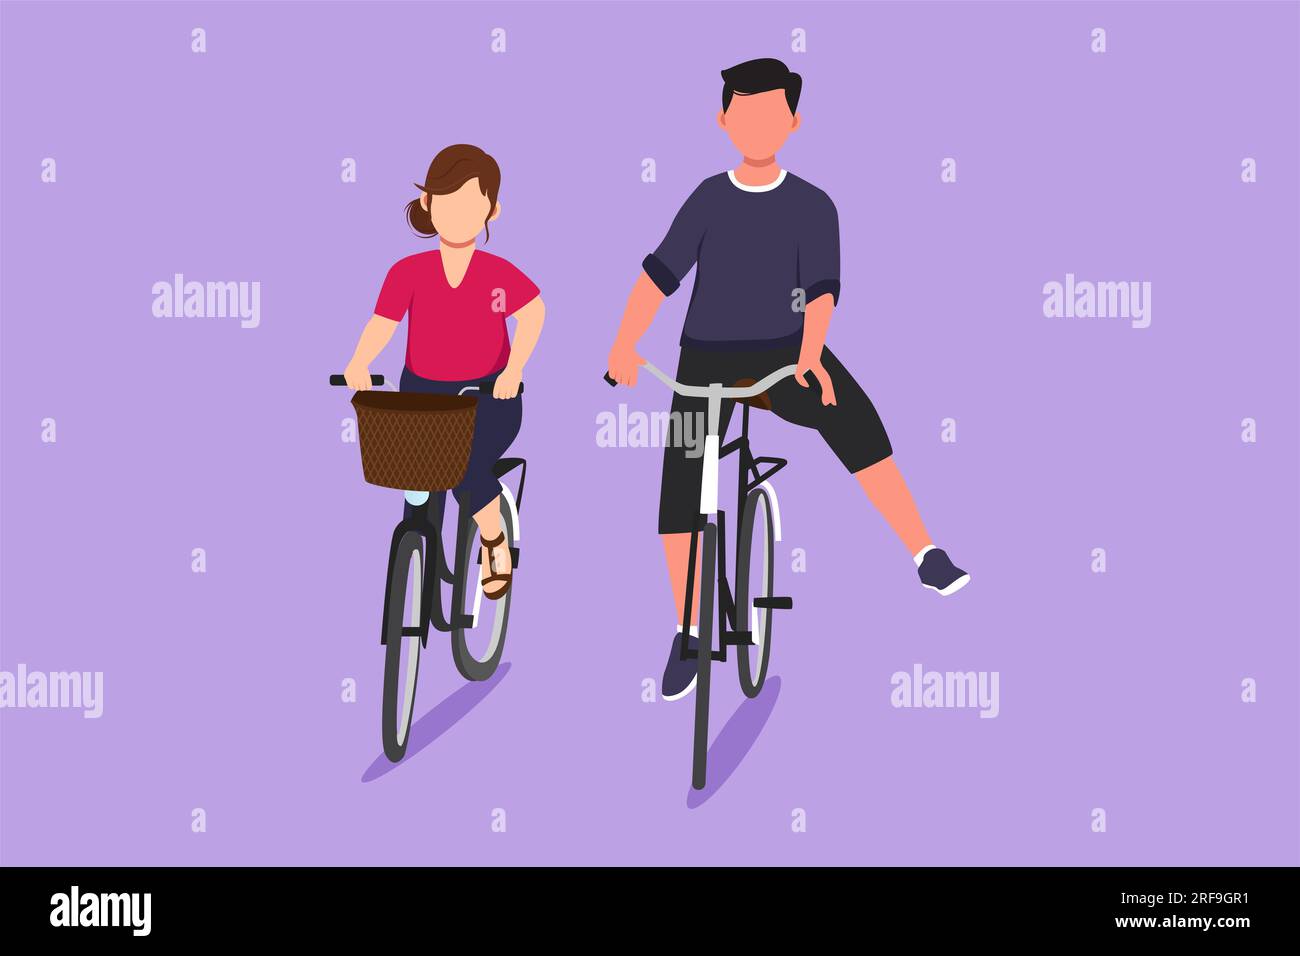 https://c8.alamy.com/compde/2rf9gr1/eine-figur-ein-lustiges-junges-paar-das-fahrrad-fahrt-romantisches-teenager-paar-mit-dem-fahrrad-im-stadtpark-junger-mann-und-verliebte-frau-glucklich-2rf9gr1.jpg